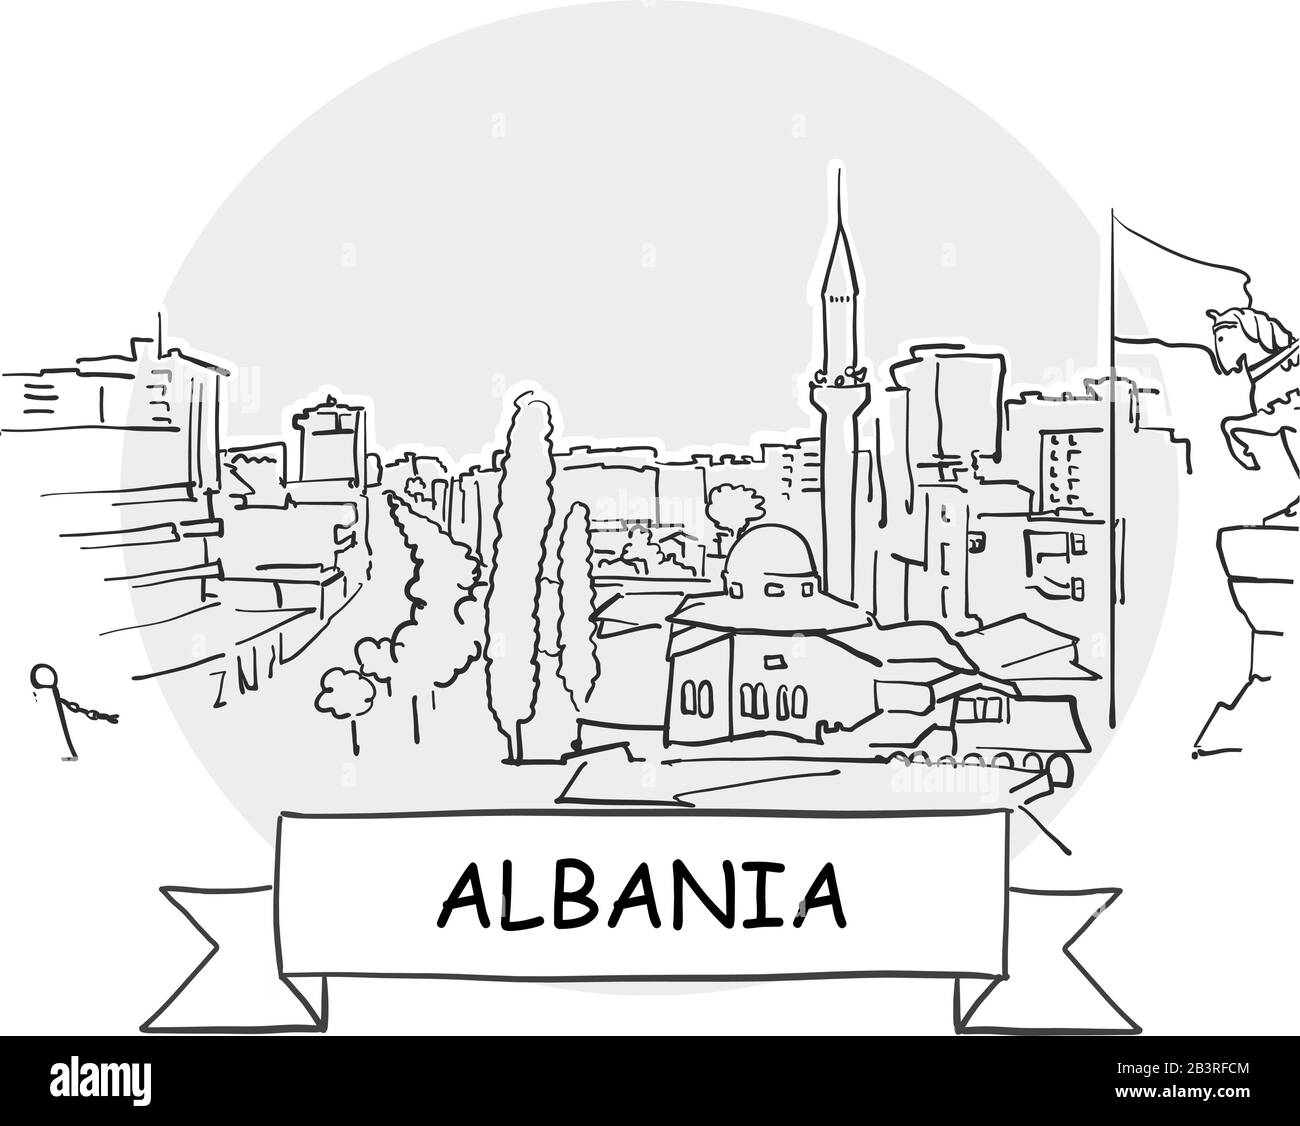 Albanien - Urbanisches Vektor-Zeichen. Schwarze Strichzeichnung mit Farbband und Titel. Stock Vektor